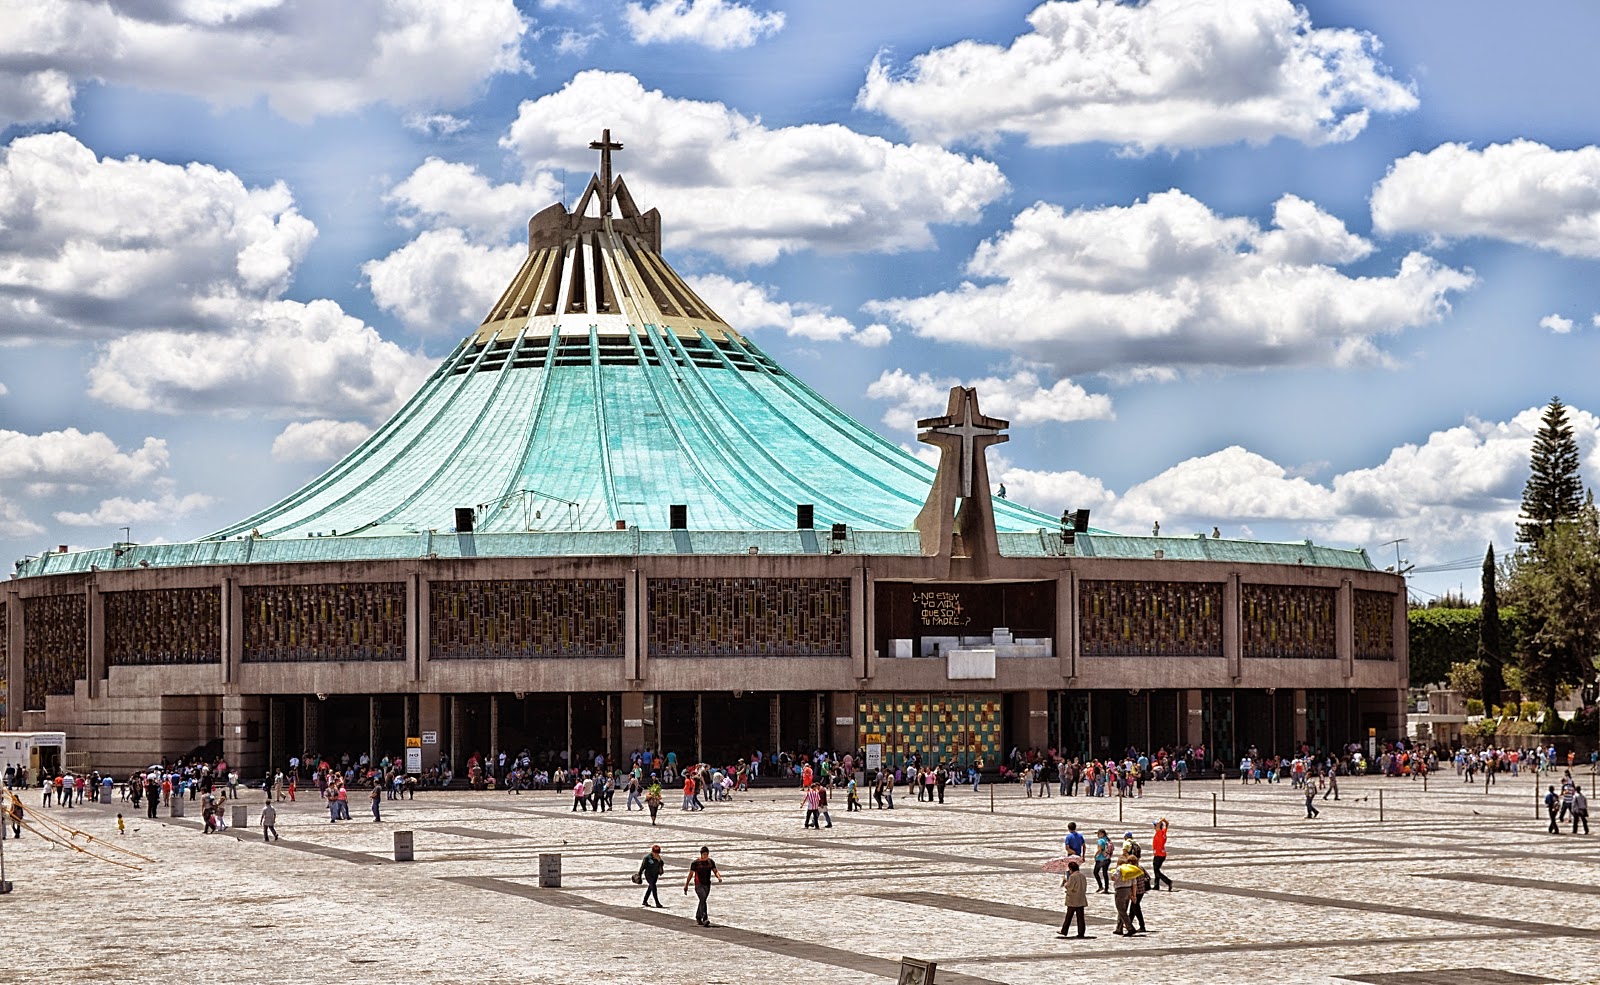  La Basílica de Guadalupe, el centro religioso más visitado del mundo